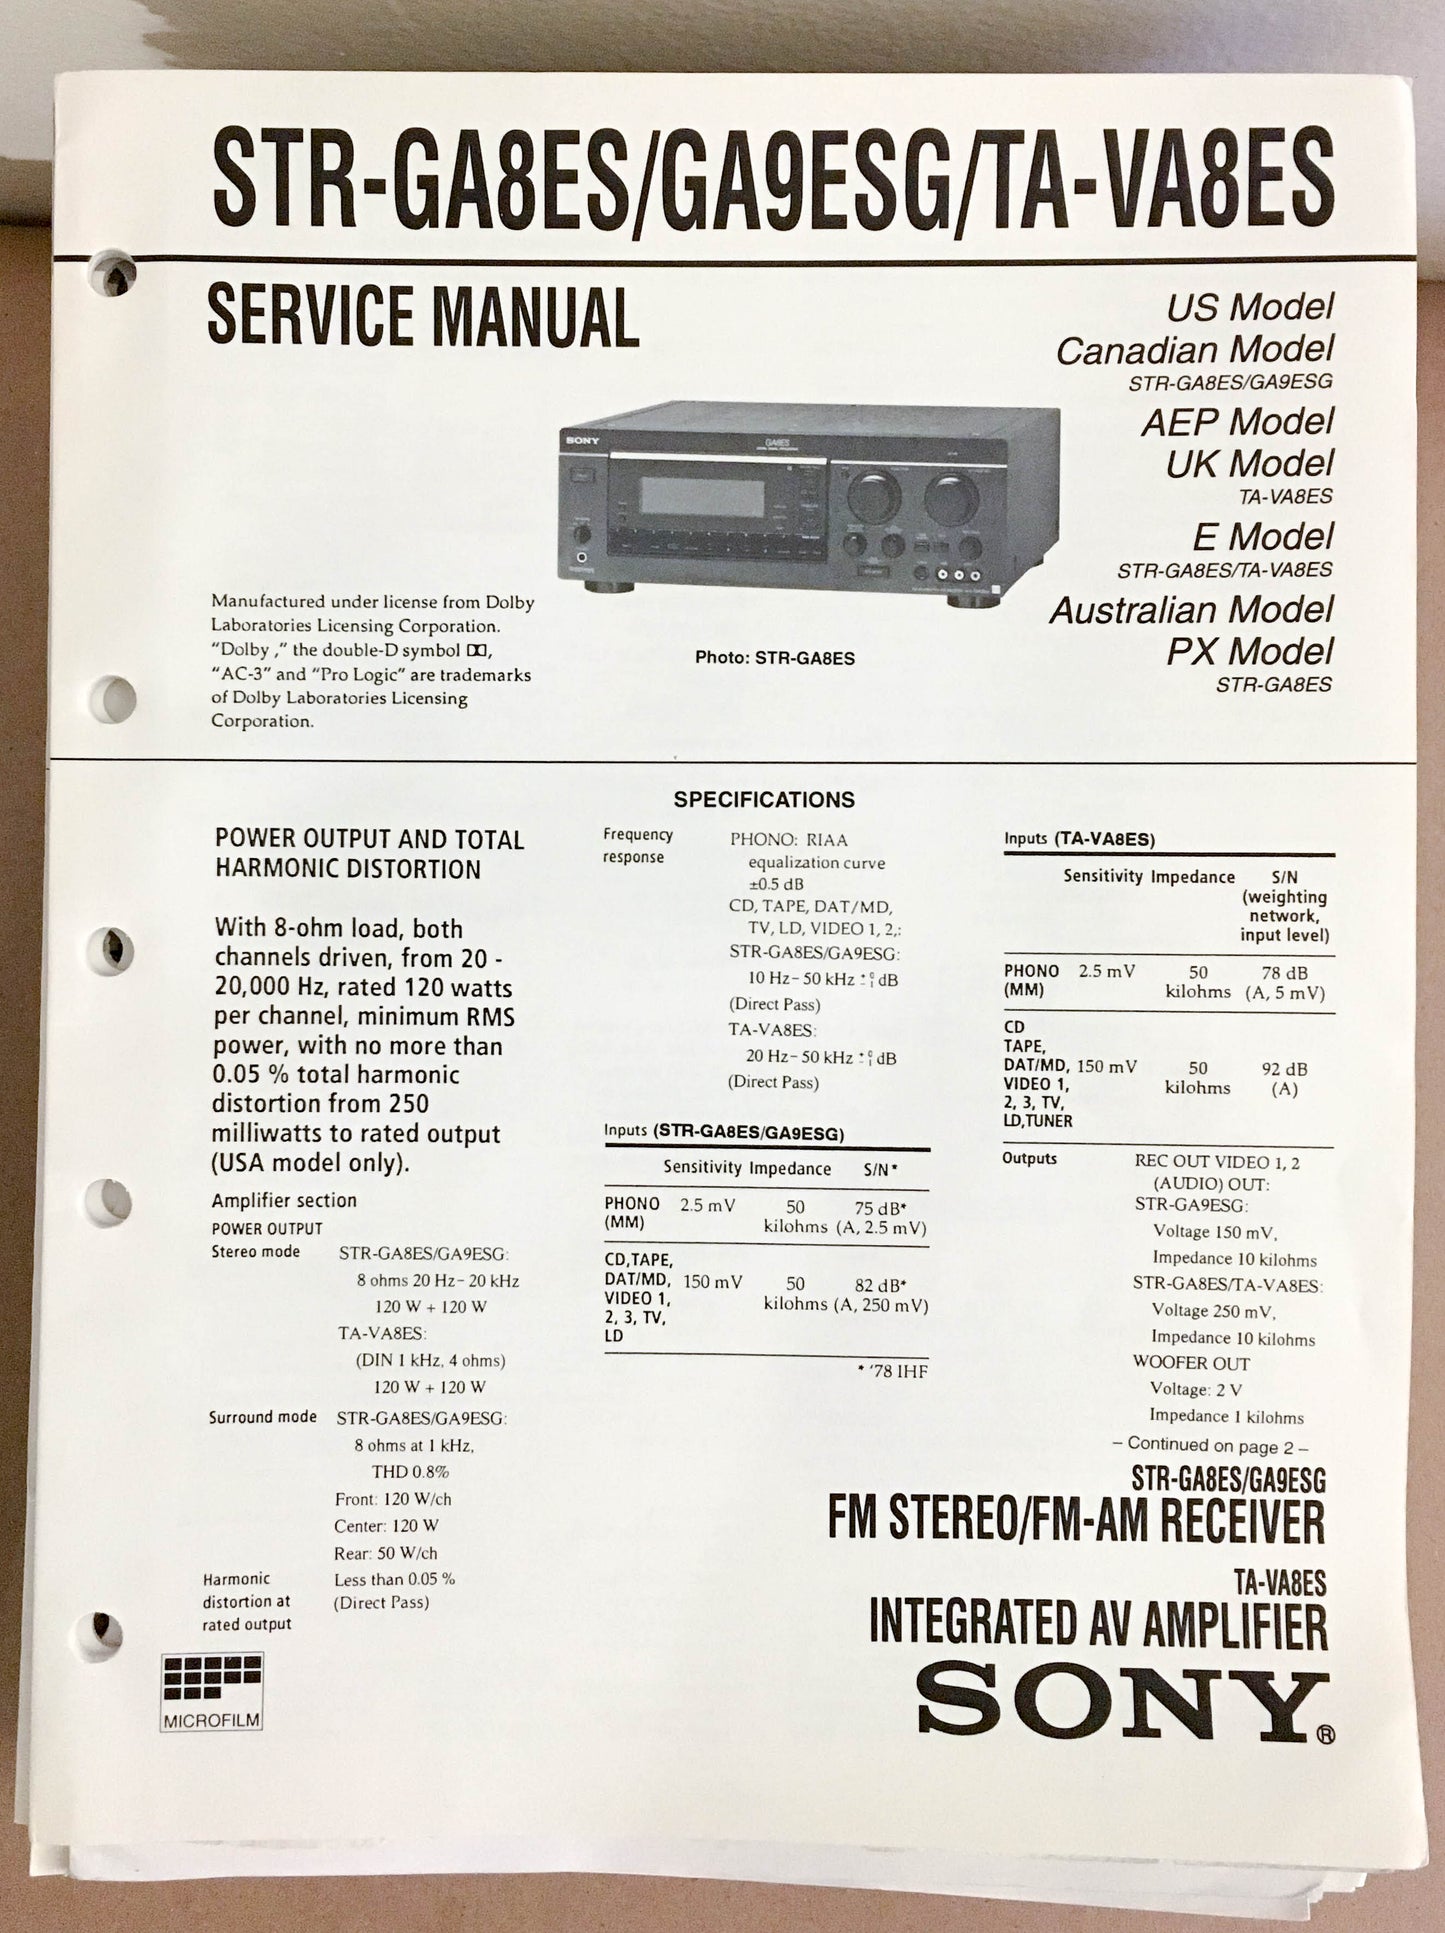 Sony STR-GA8ES GA9ESG TA-VA8ES Receiver  Service Manual *Original*